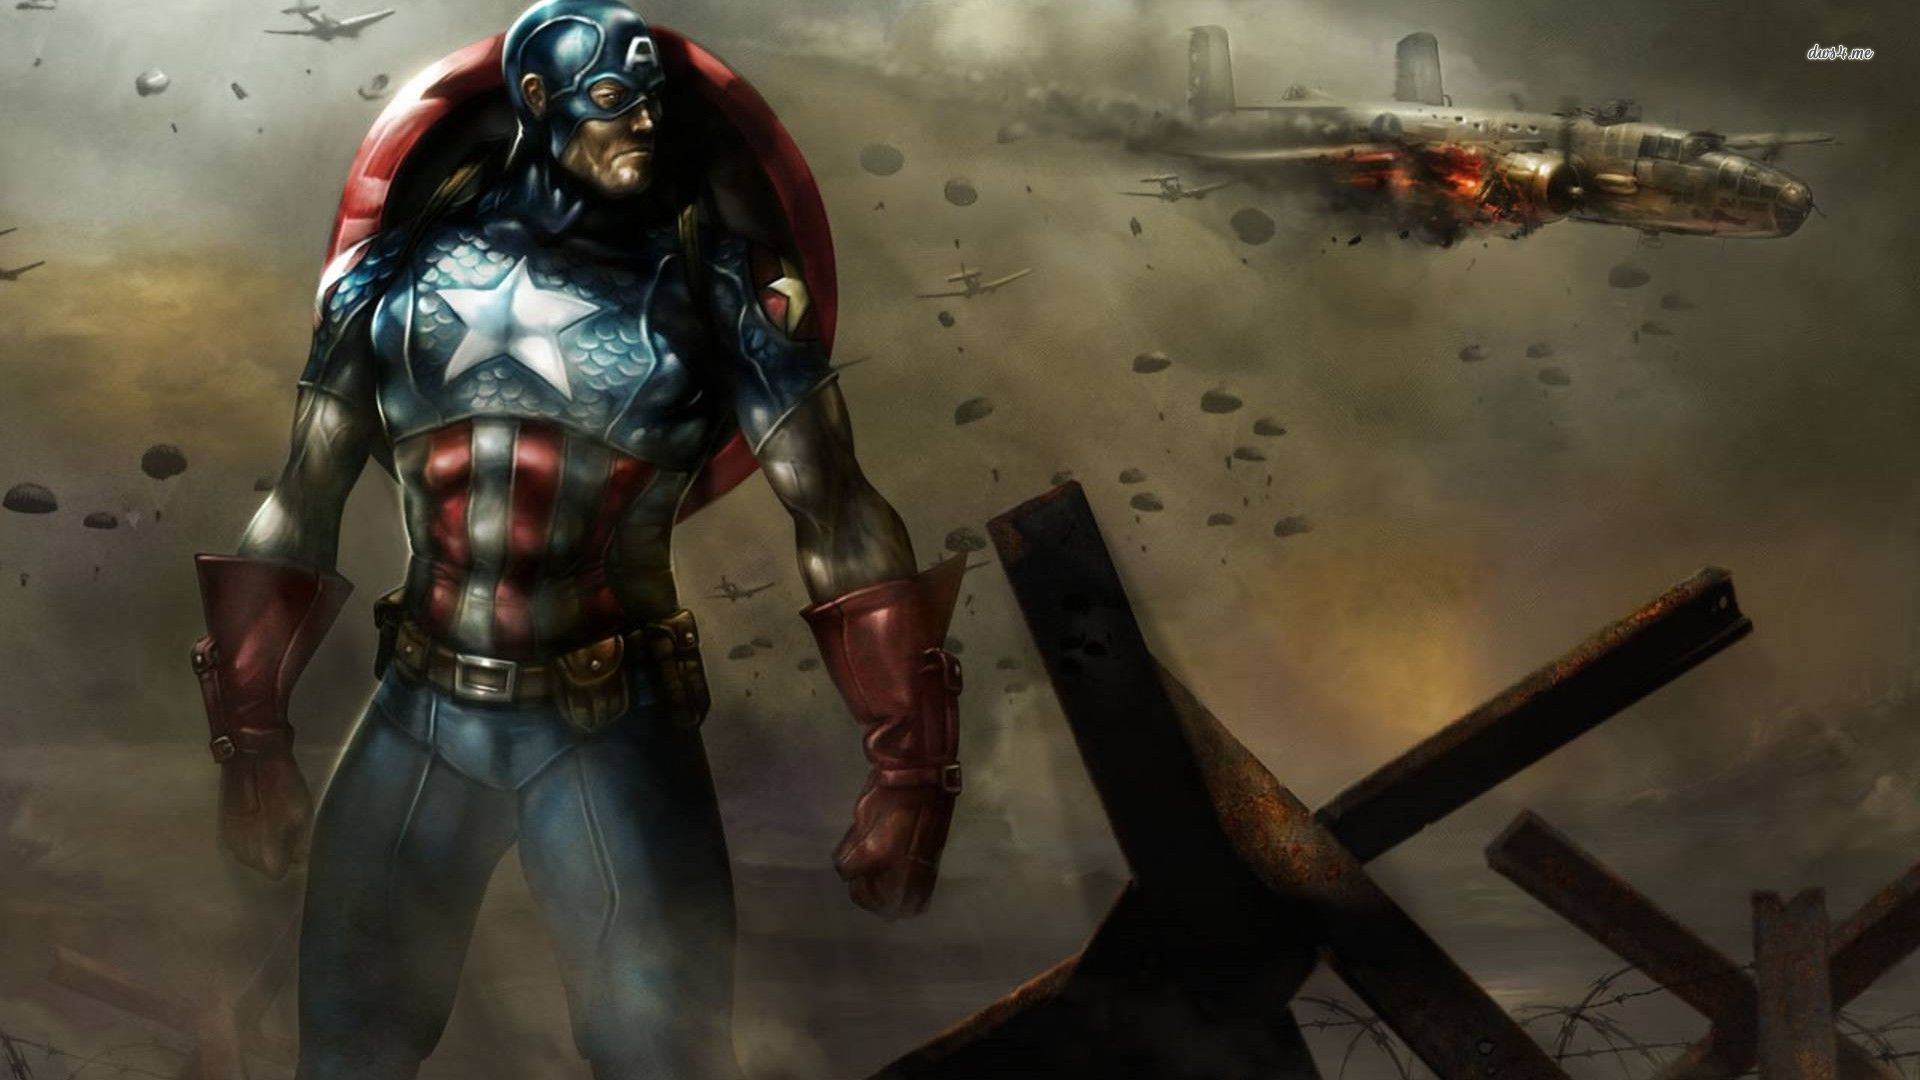 35 Captain America Wallpaper for Desktop